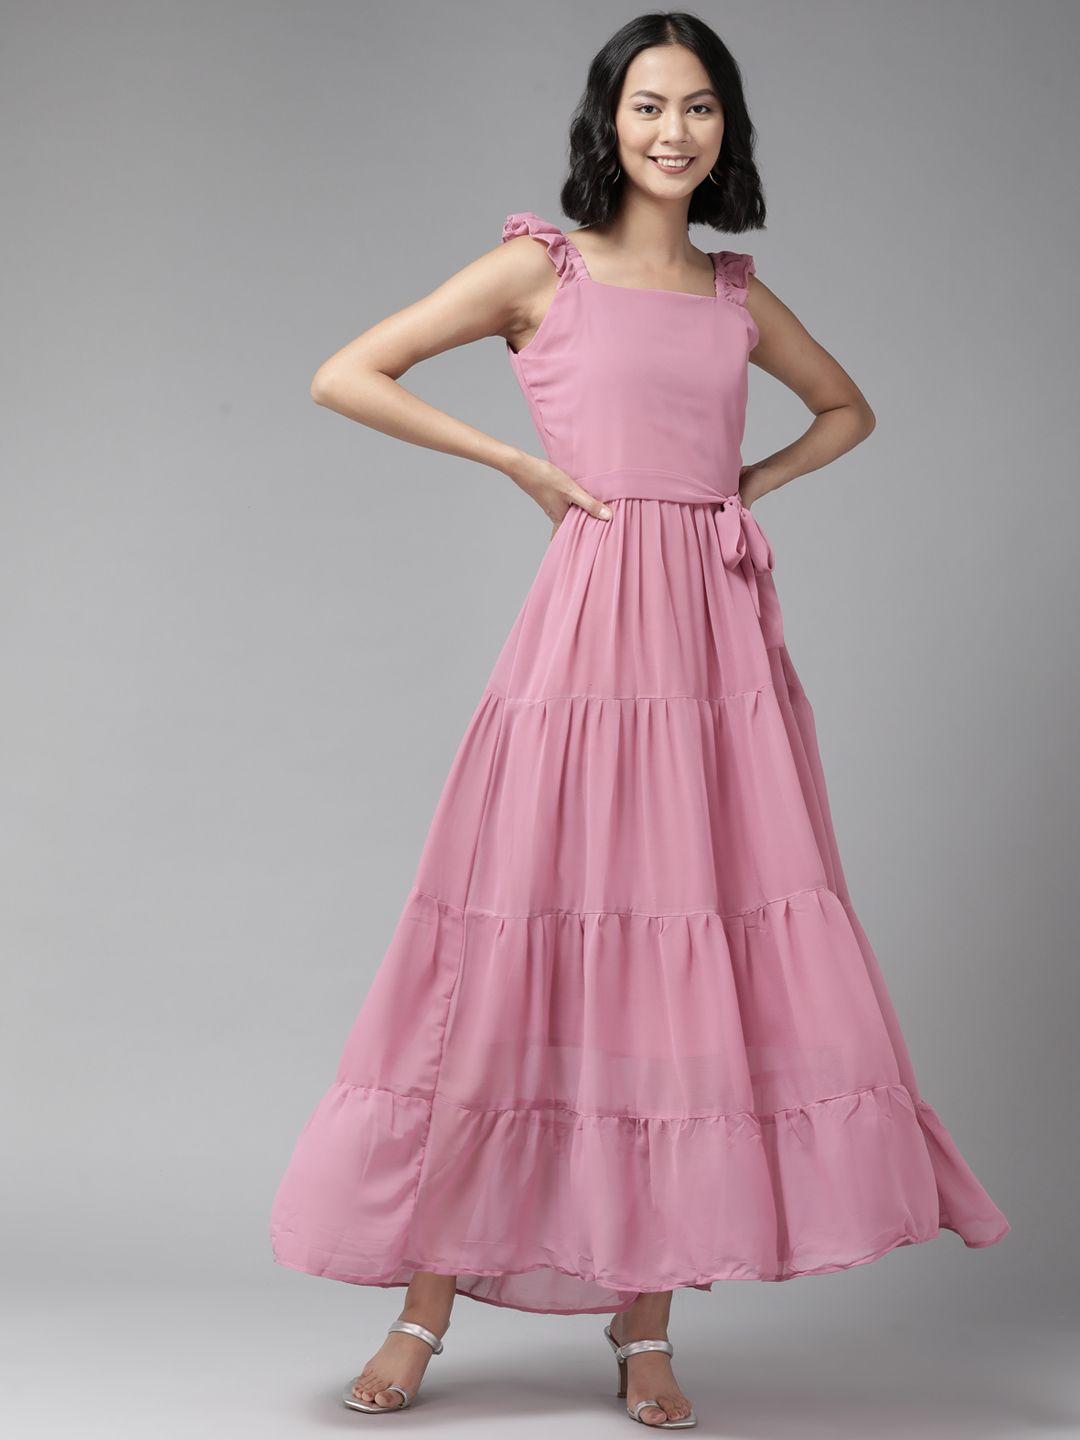 aarika women pink solid fit & flare maxi dress